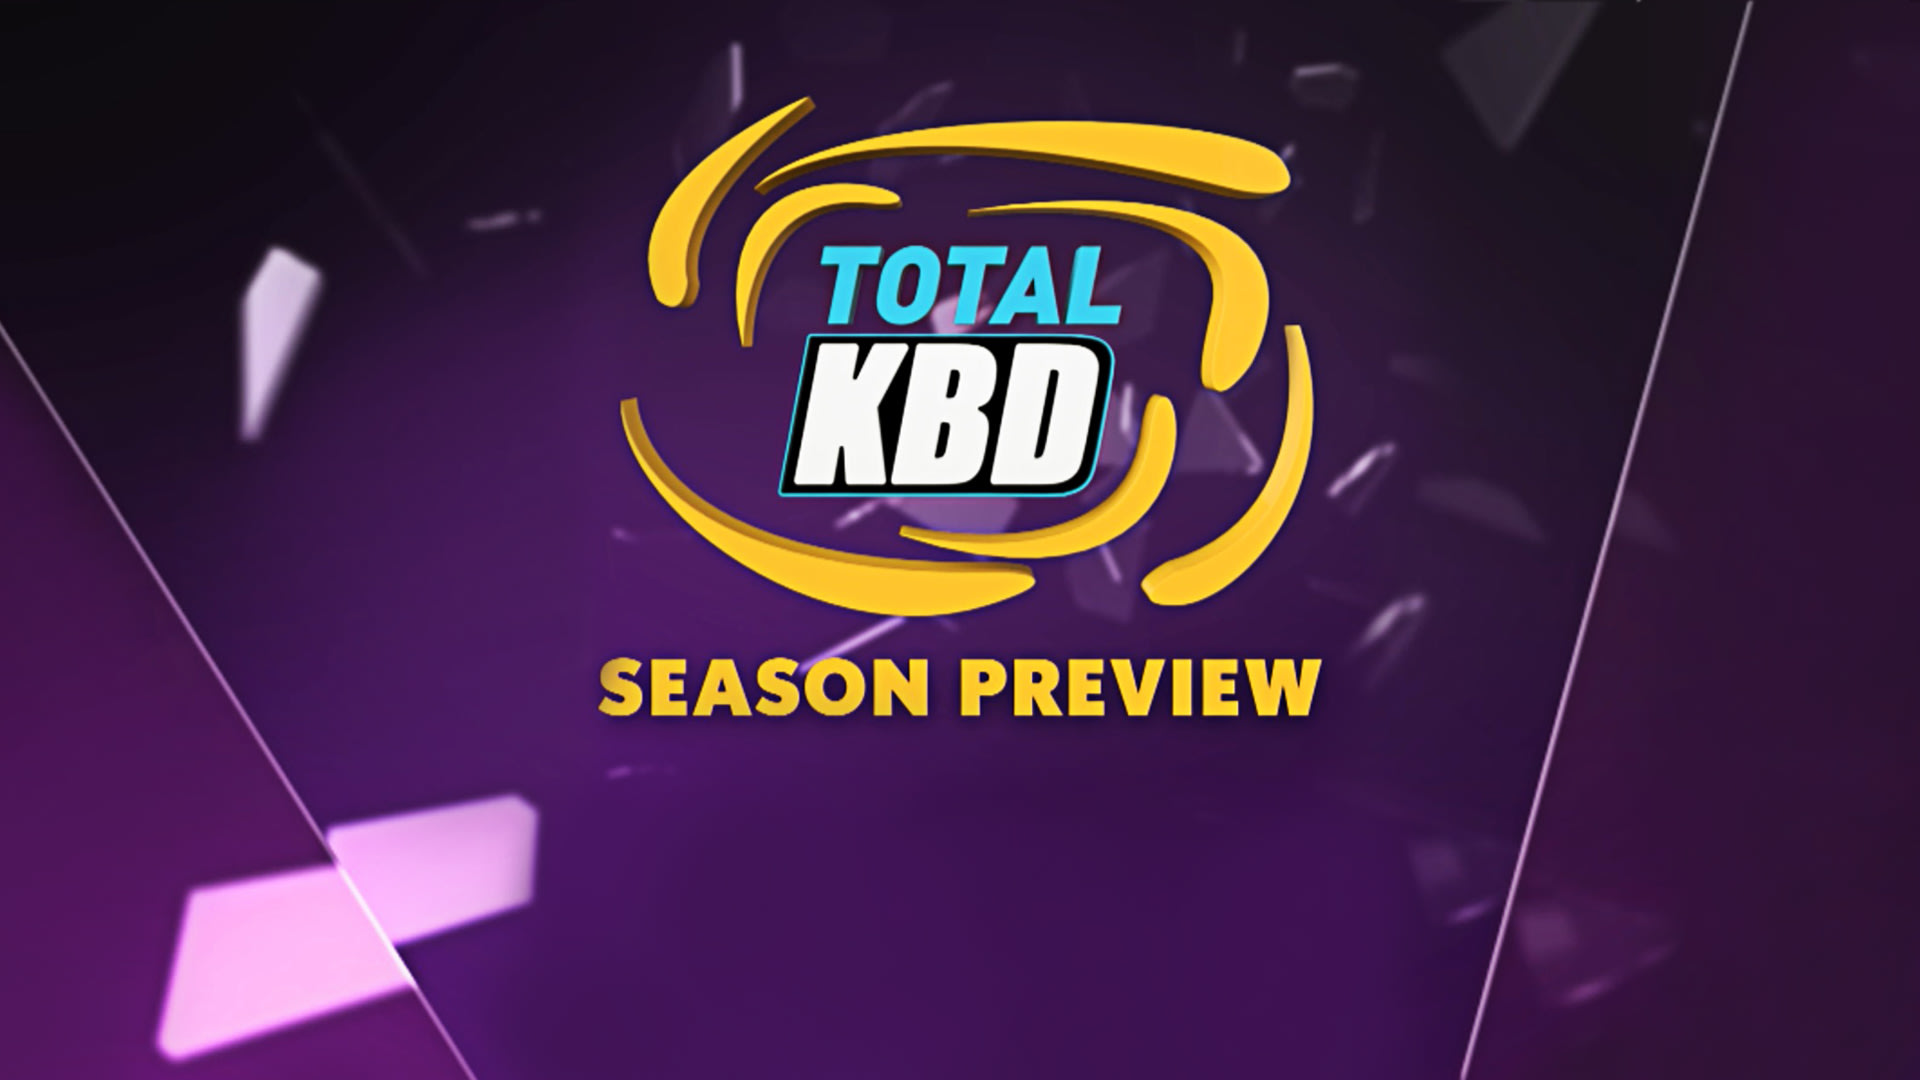 Total KBD- Season Preview 2018